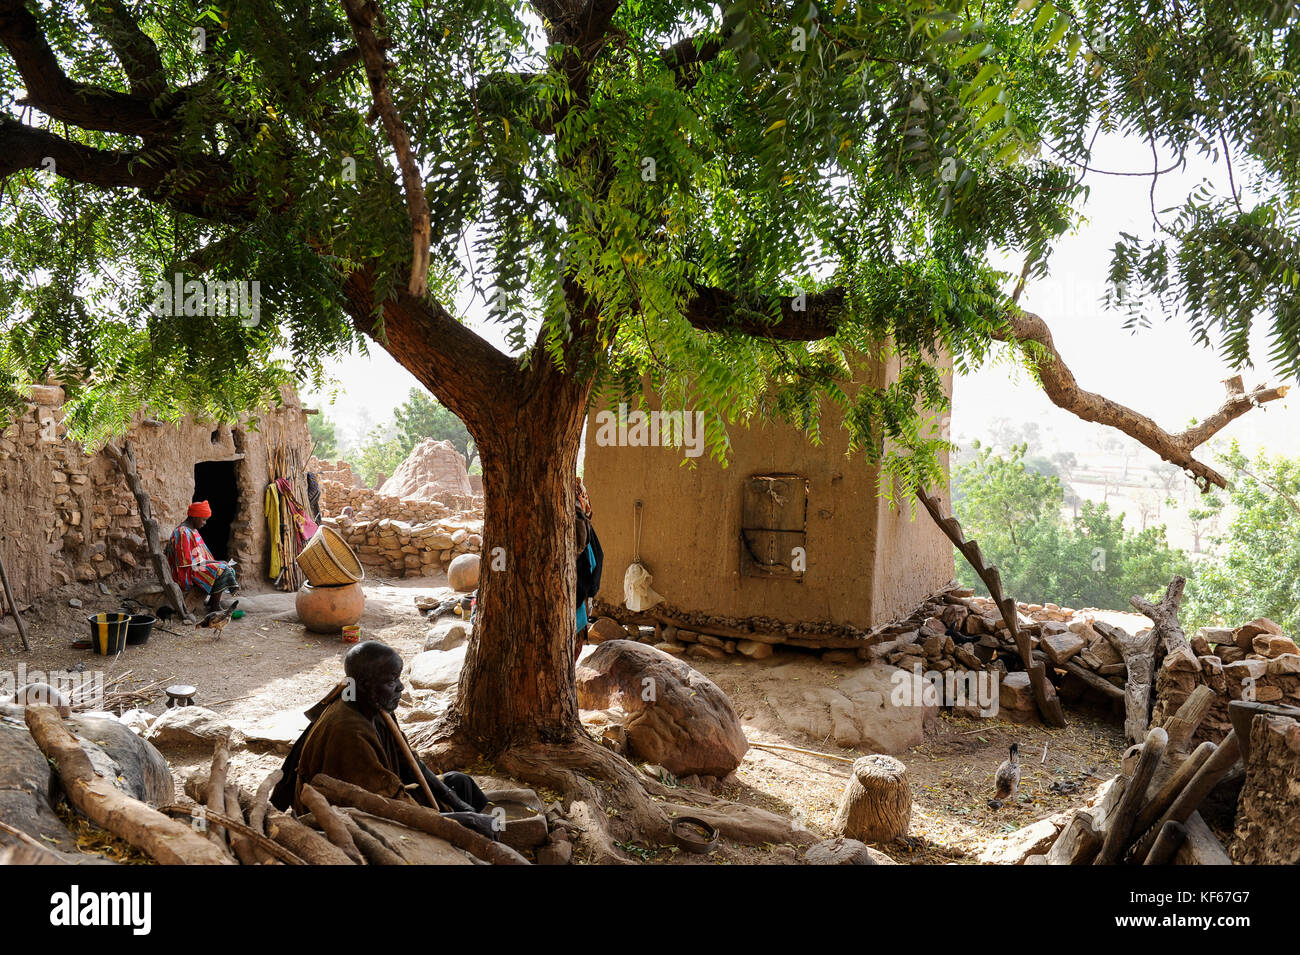 Land der Dogon in Mali, Dogon Village mit Ton Architektur an der Falaise, UNESCO-Weltkulturerbe, neem Baum/MALI, etwa 20 km von Bandiagara südoestlich verlaeuft die rund 200 km lange Falaise, UNESCO-Welterbe, eine teilweise stark erodierte Sandsteinwand bis zu 300m Höhe, hier befinden sich viele Dogon Doerfer im Lehmbau Illustr. Stockfoto